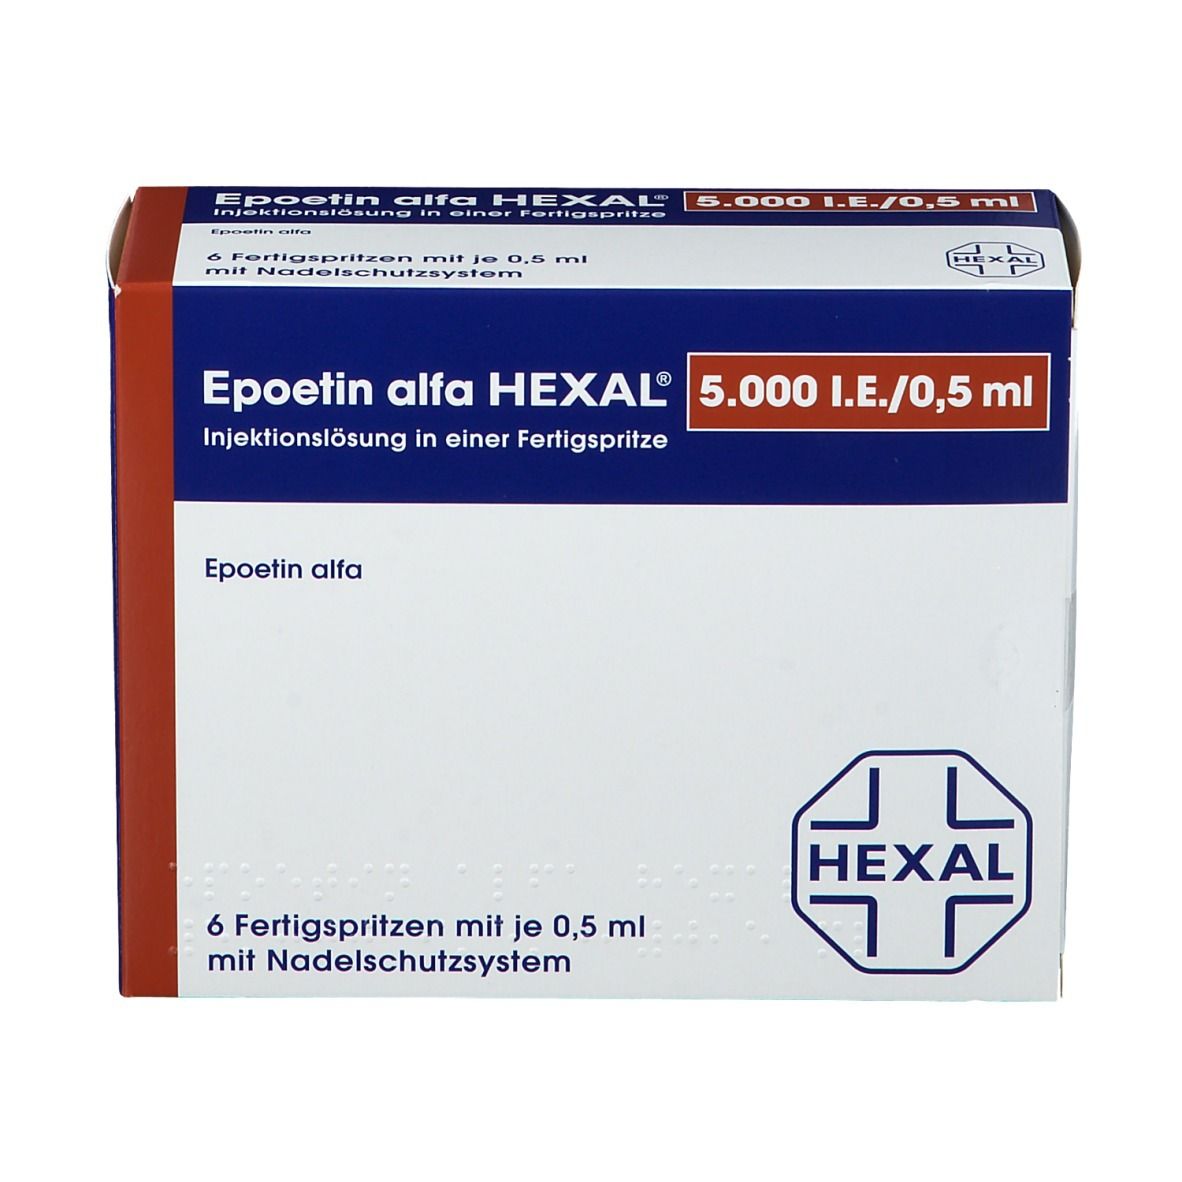 Epoetin alfa HEXAL® 5.000 I.E/0,5 ml